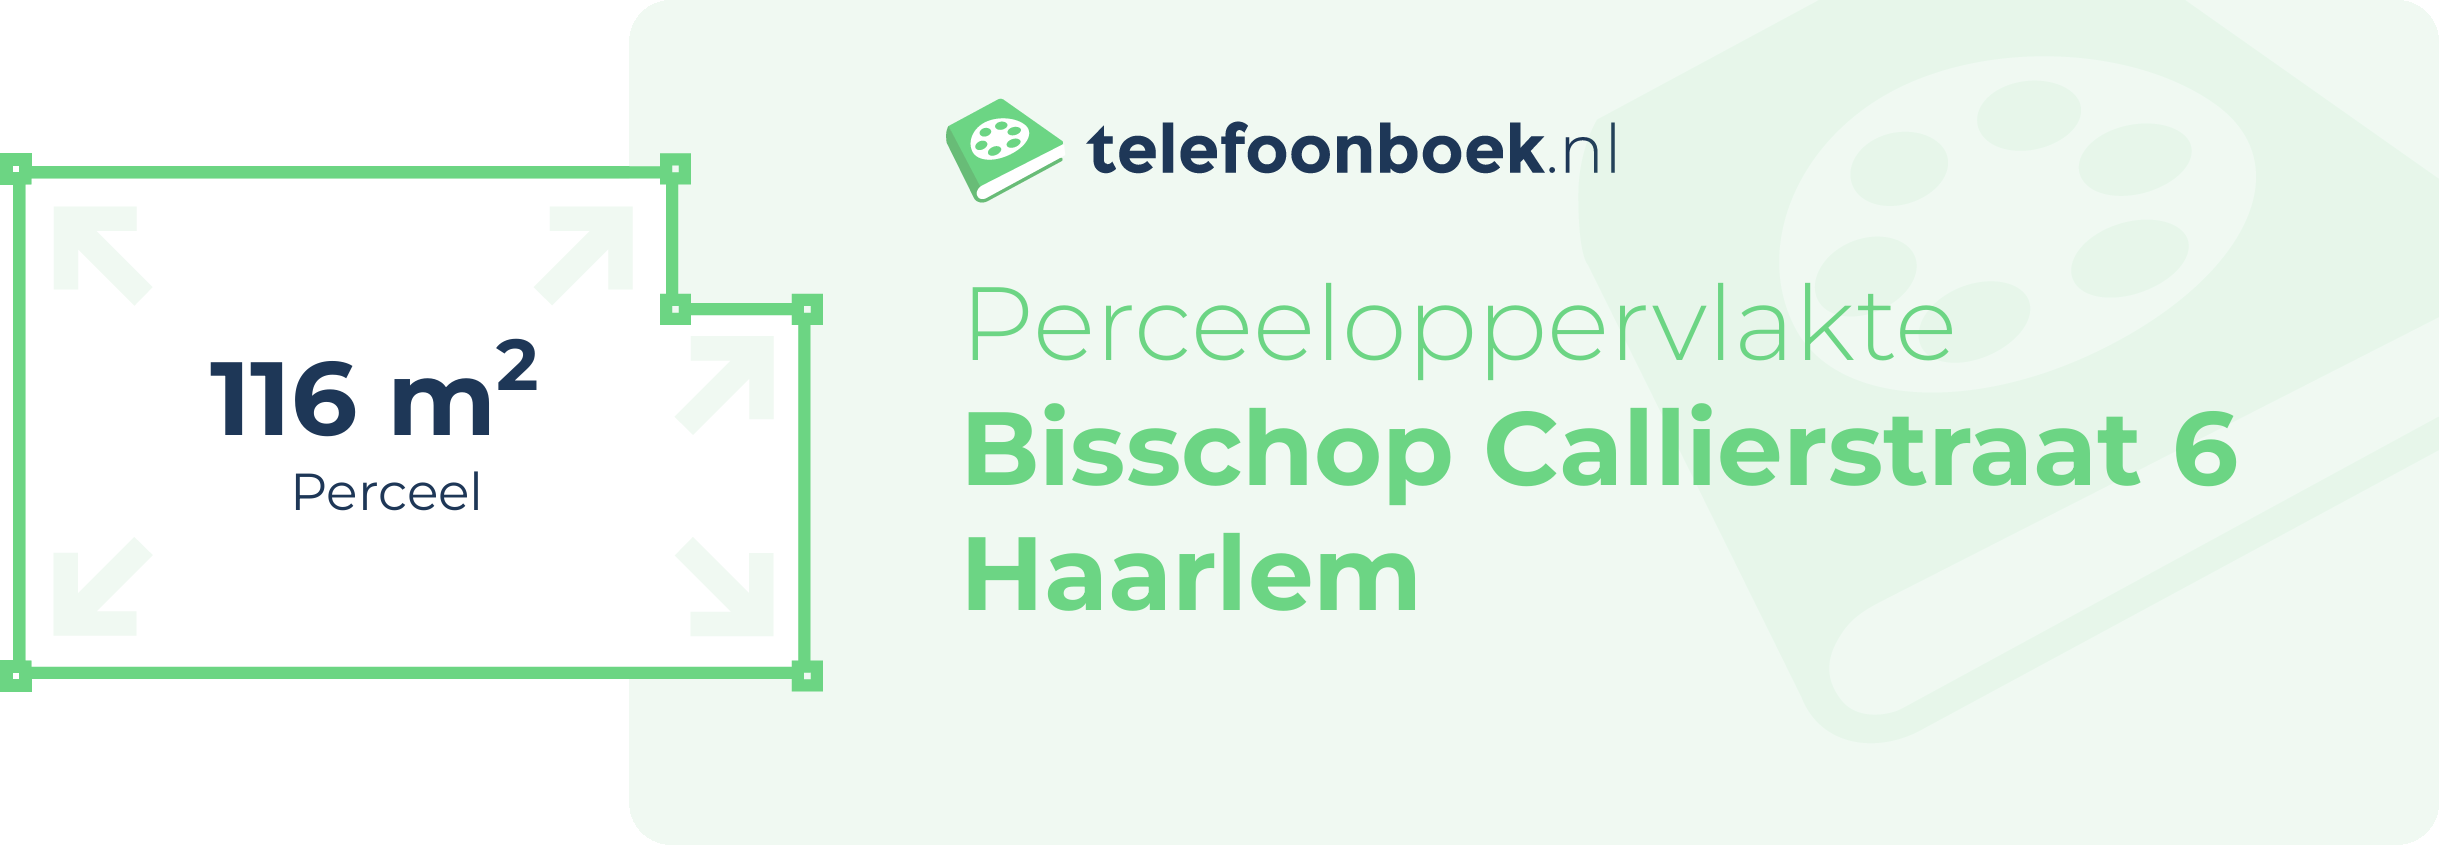 Perceeloppervlakte Bisschop Callierstraat 6 Haarlem